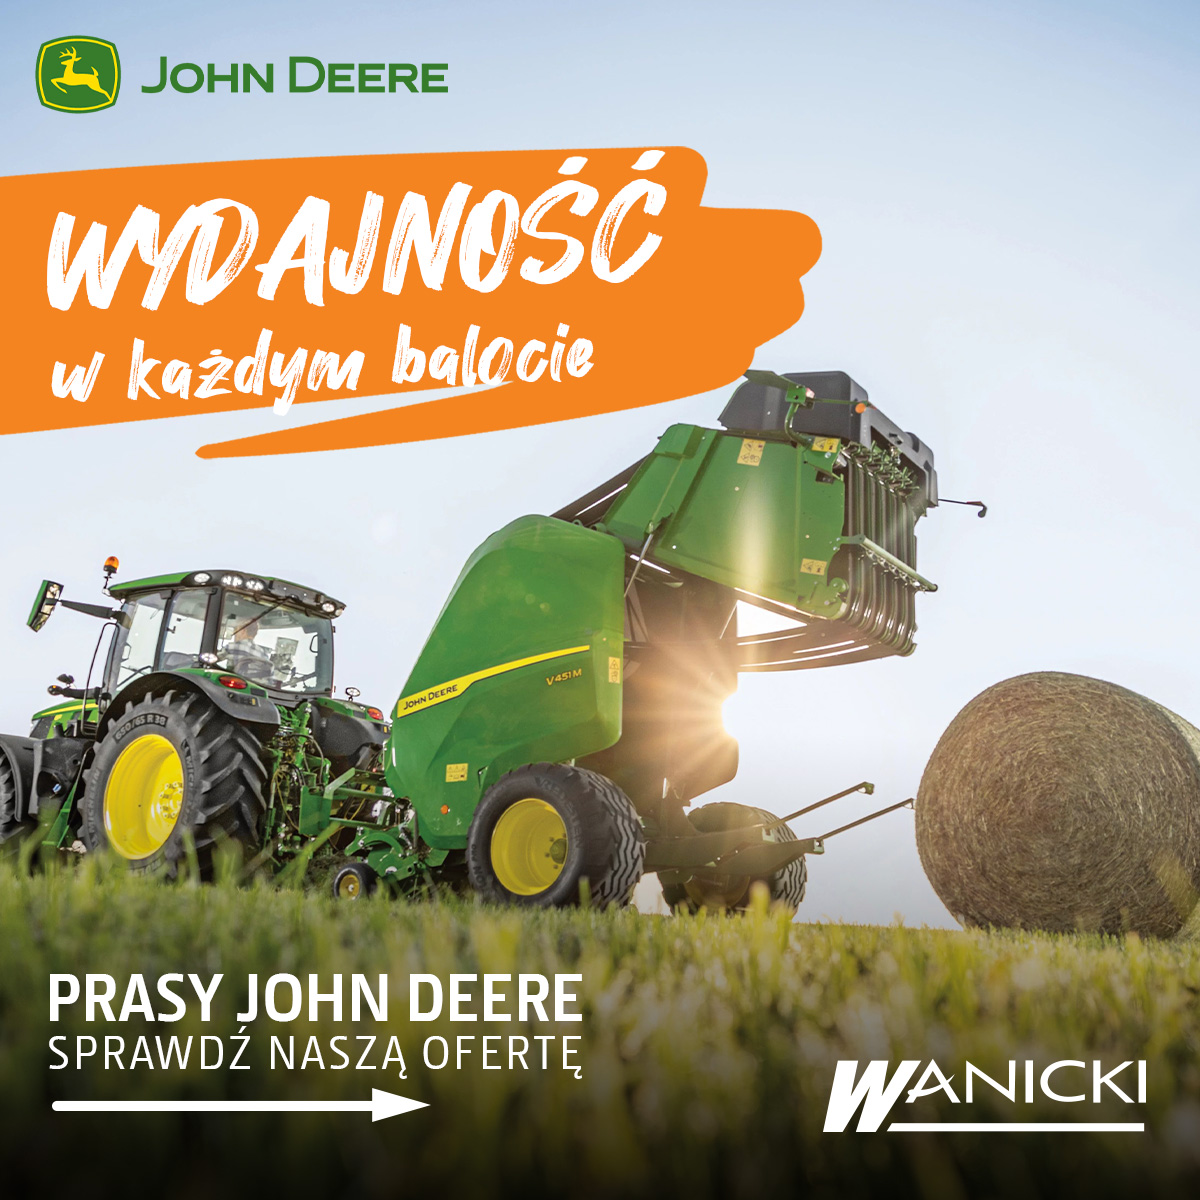 SPRASOWANE ceny na prasy John Deere V451M i V461R w Wanicki Agro!